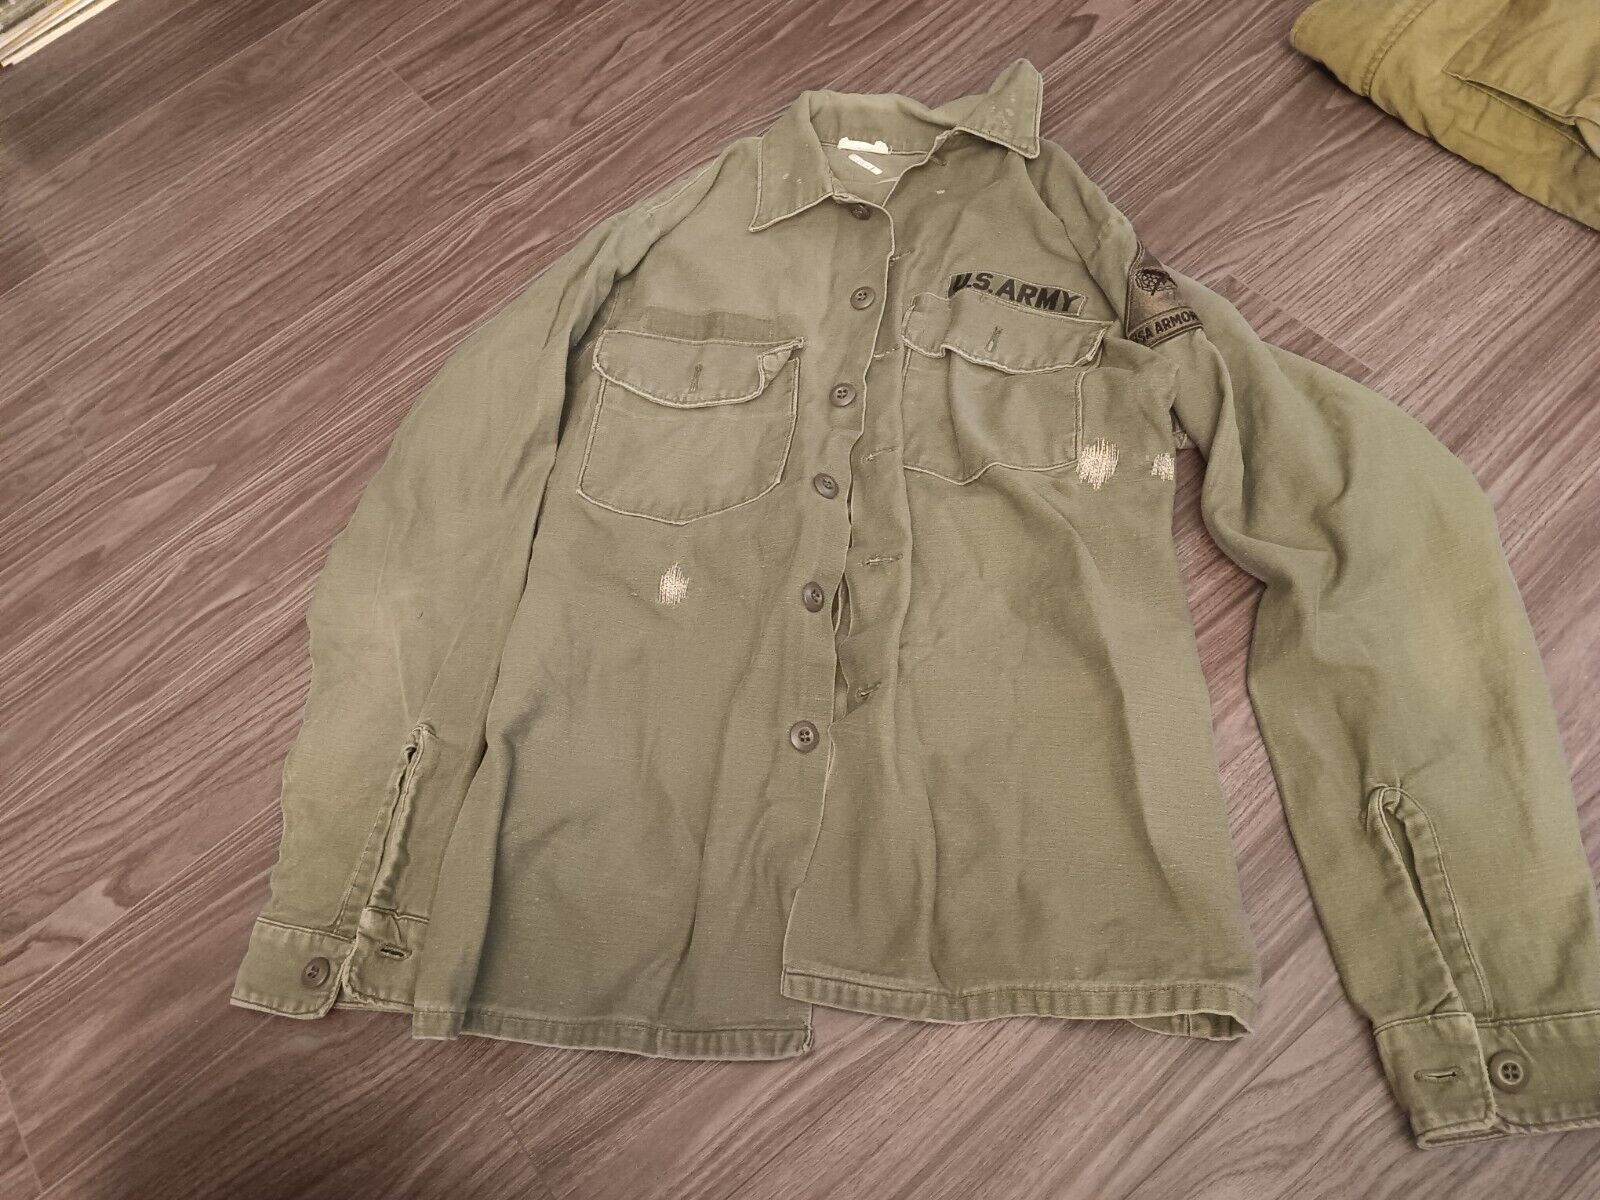 Vintage US Army Shirt Jacket Vietnam Era 1975 Uniform